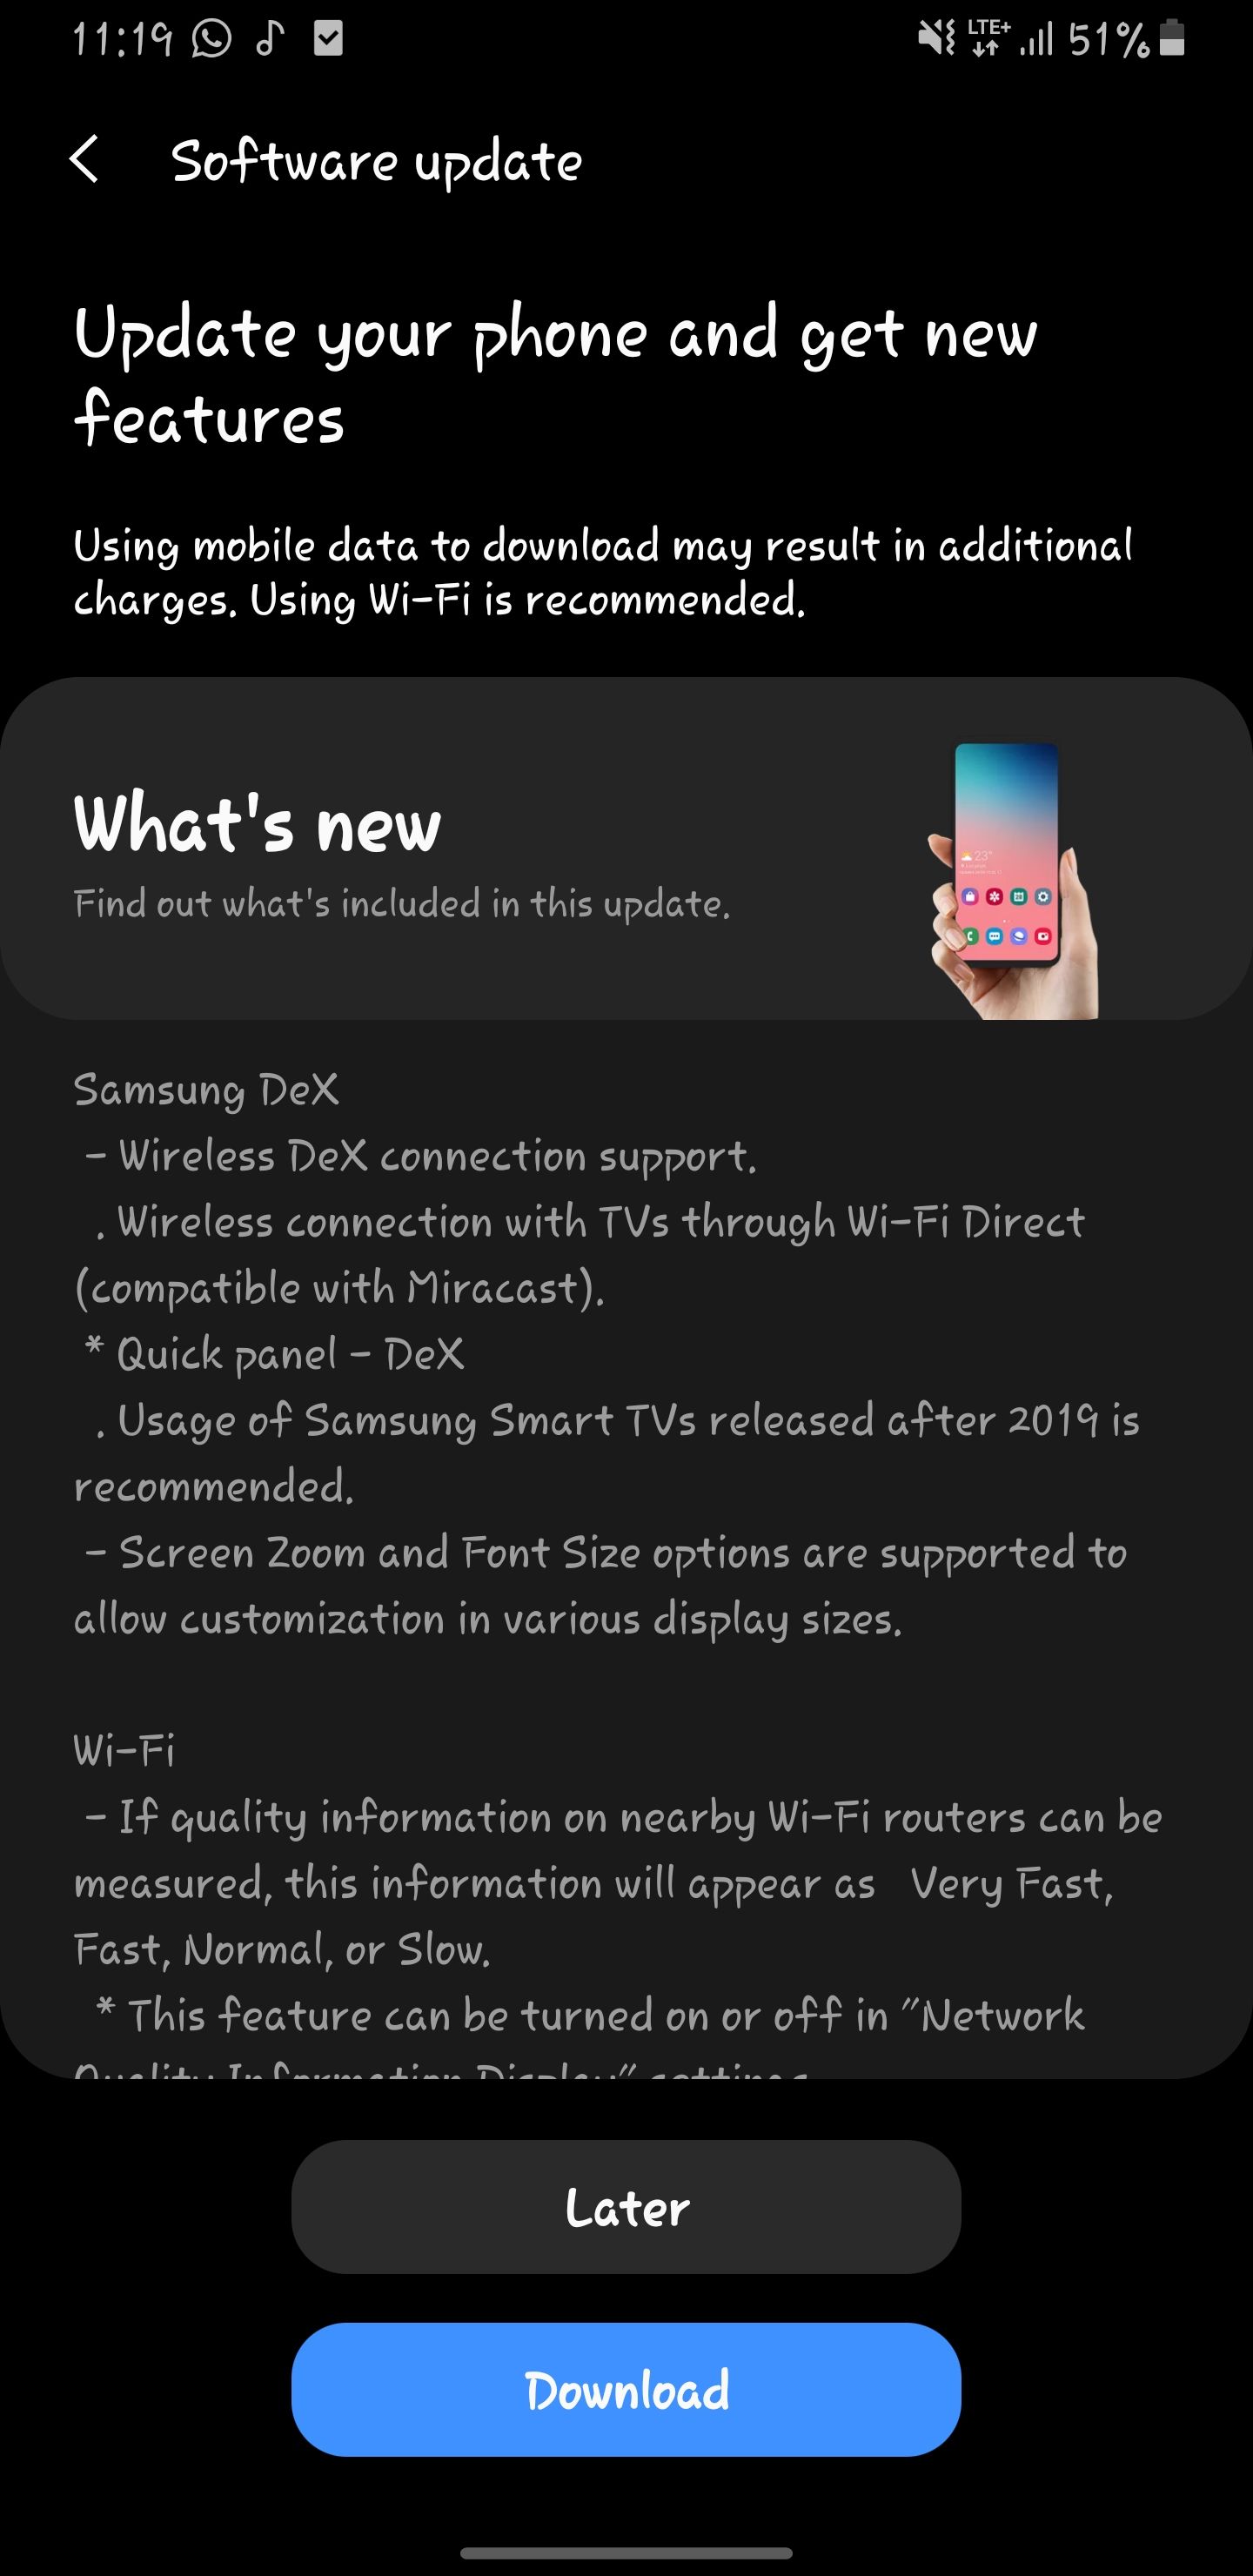 Galaxy note 9 one ui 2.5 update - Samsung Members